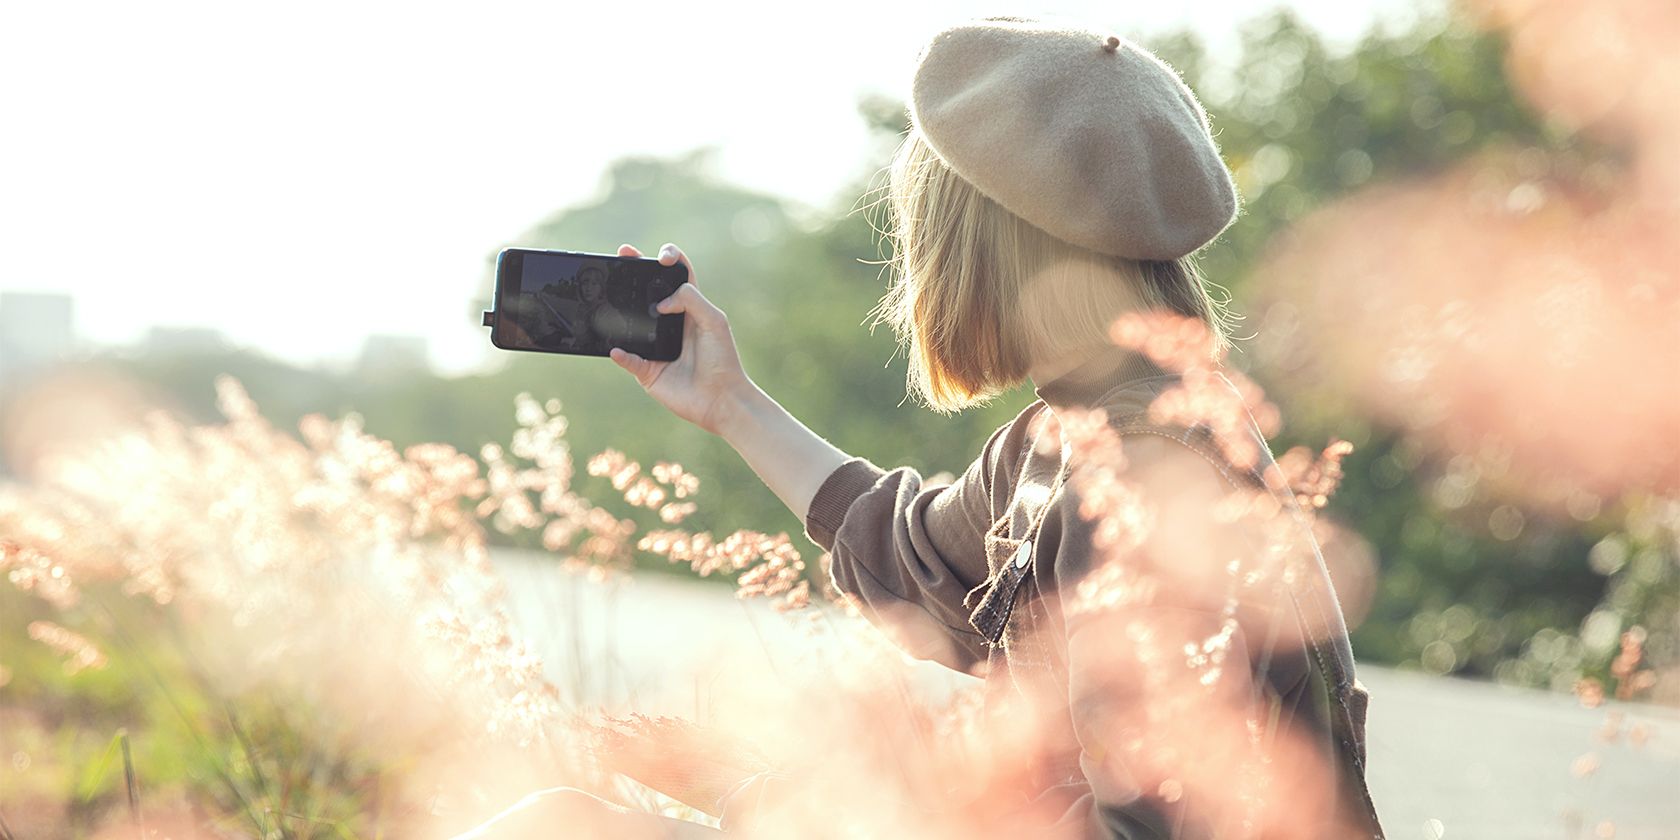 Woman in field taking selfie on phone.